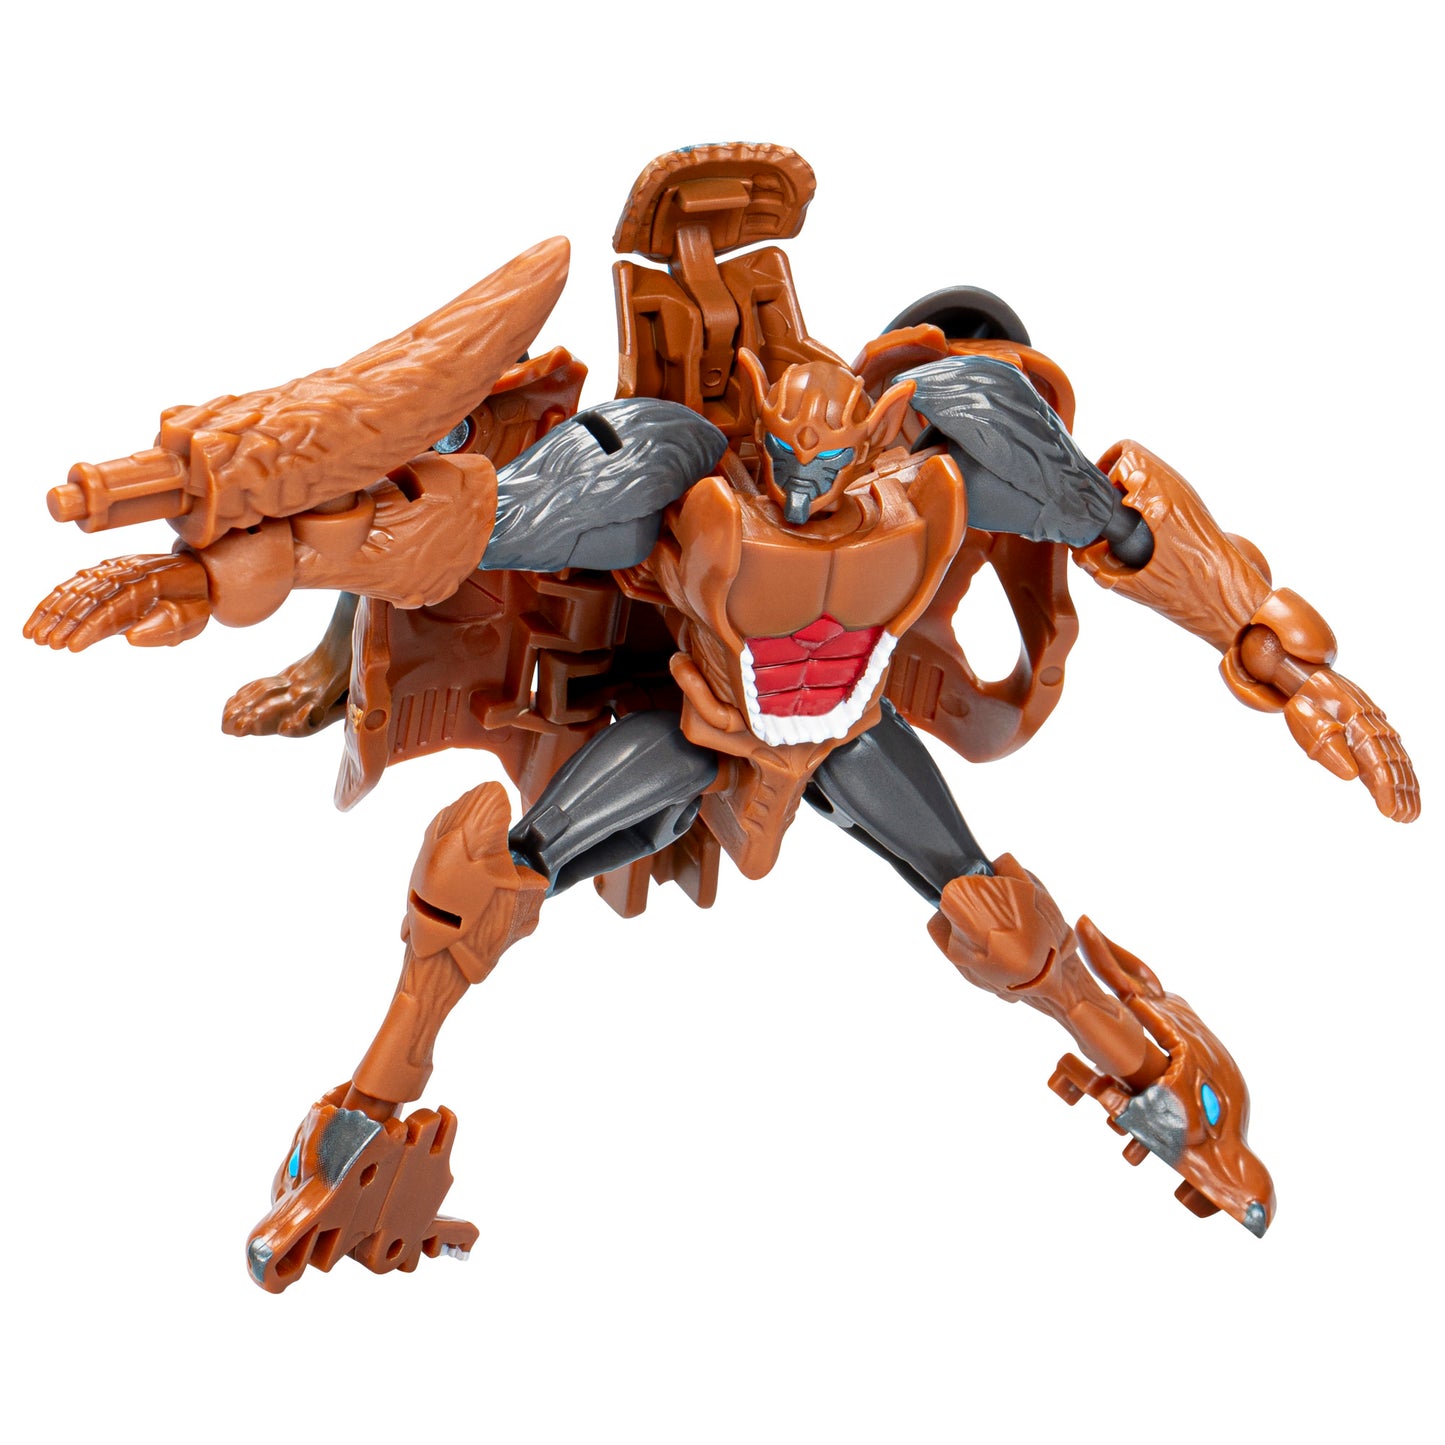 Transformers Legacy United Core Beast Wars II Universe Tasmania Kid 3.5” Action Figure, 8+